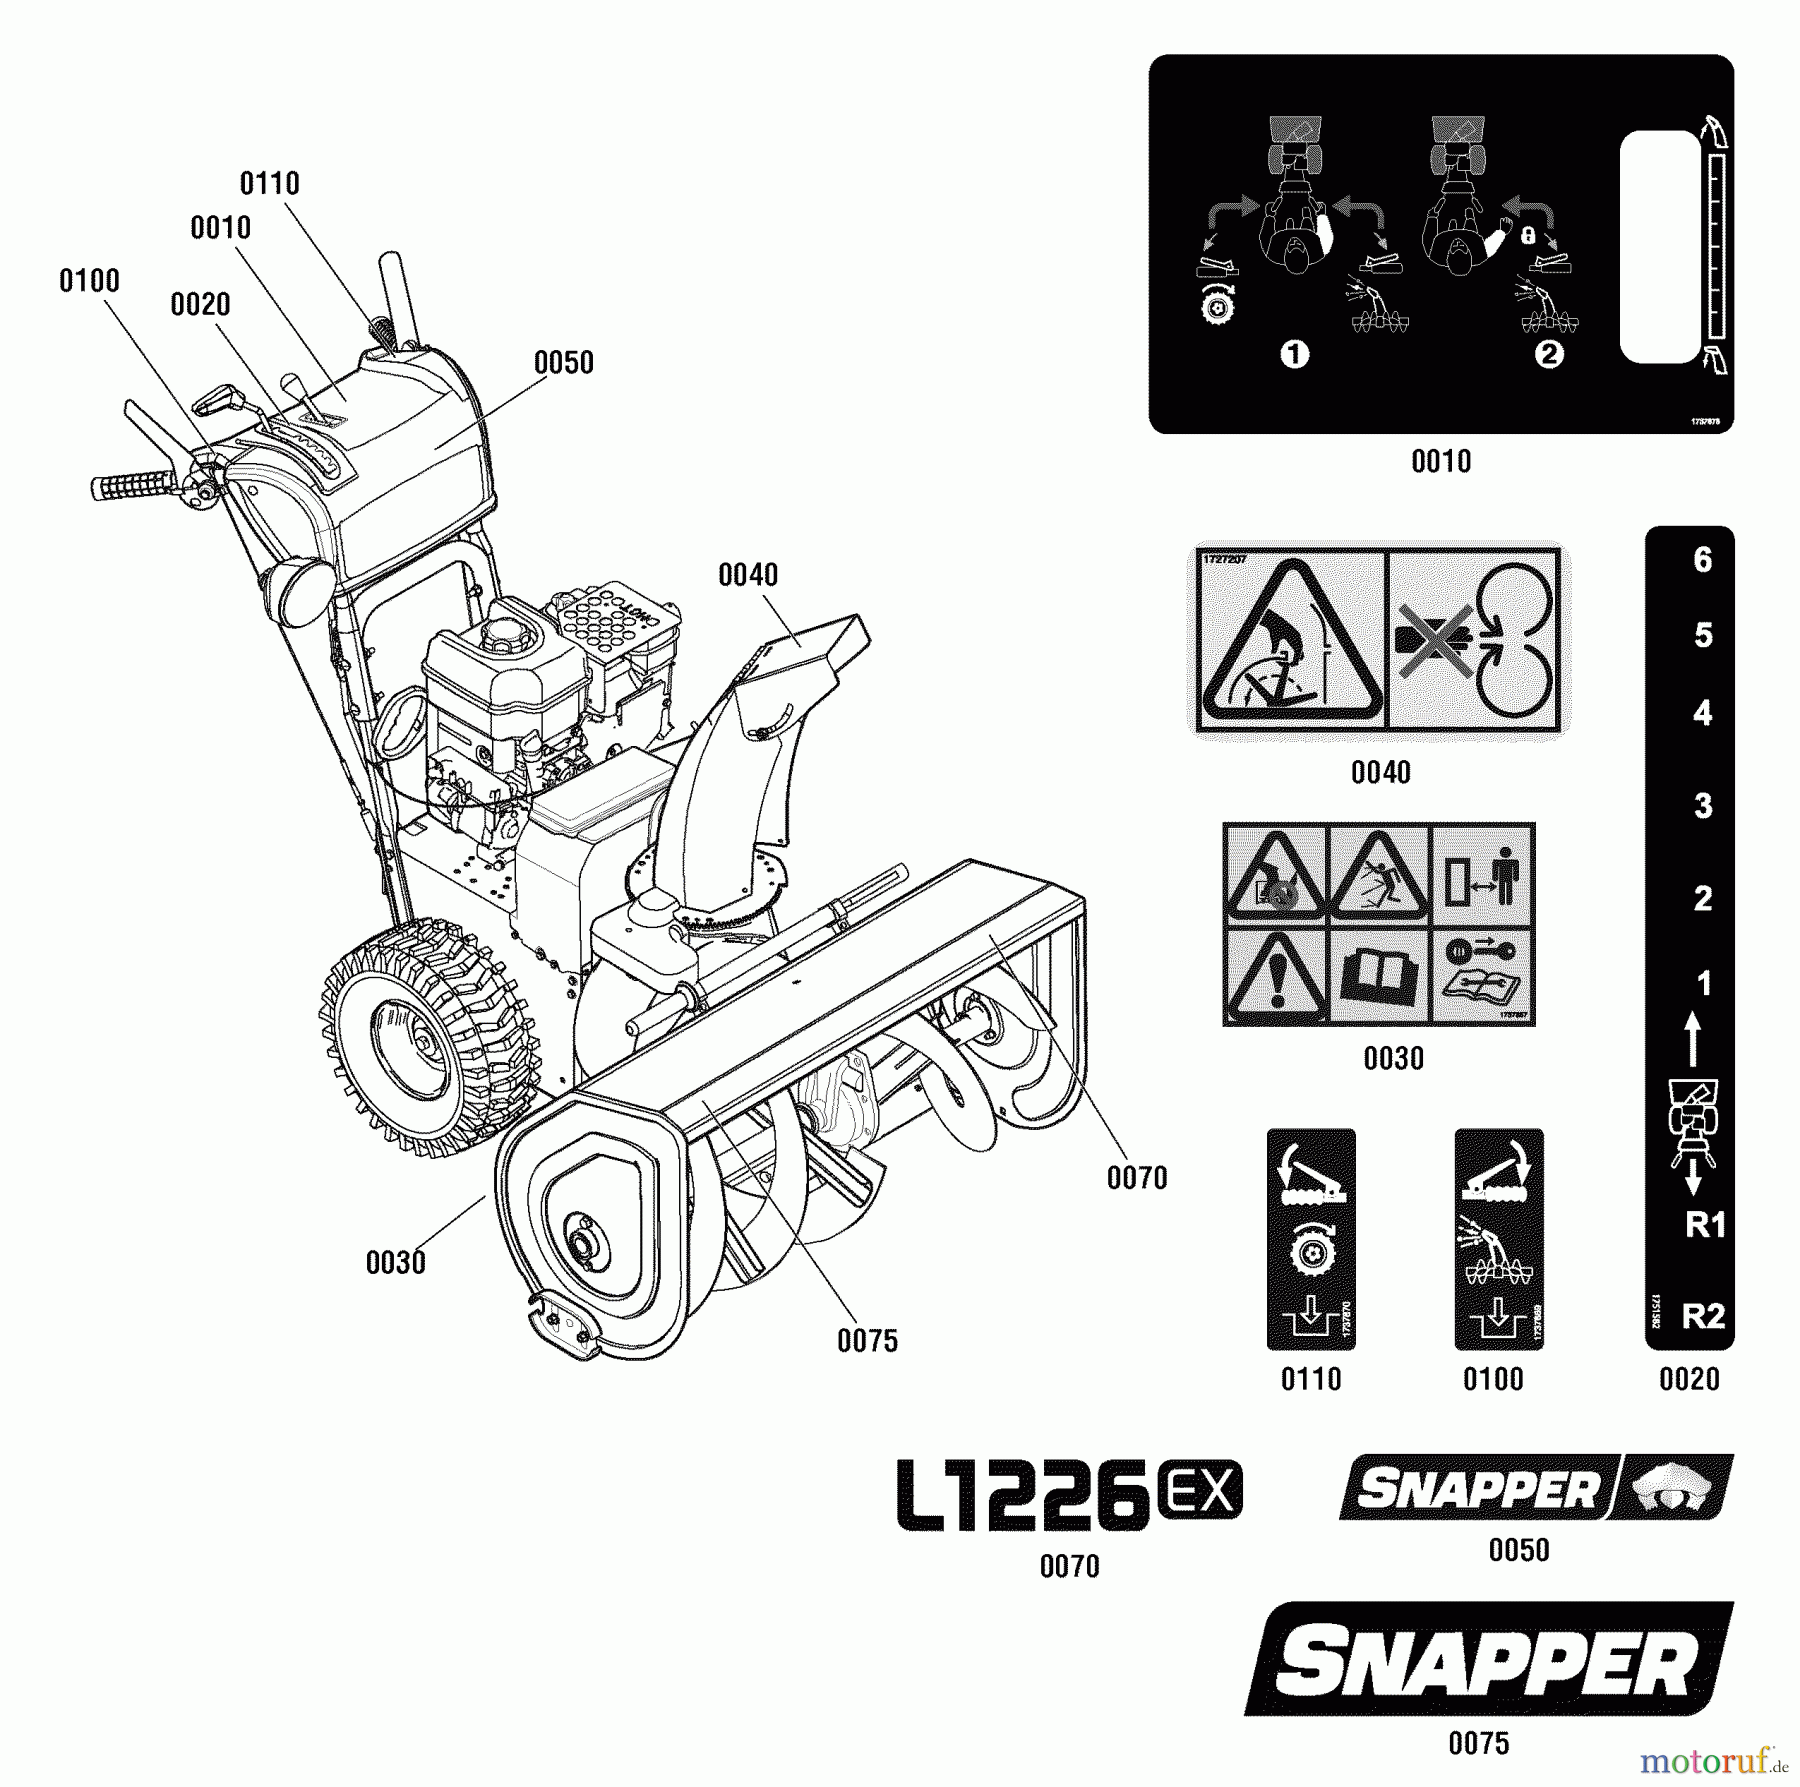  Snapper Schneefräsen L1226EX (1696010) - Snapper 26